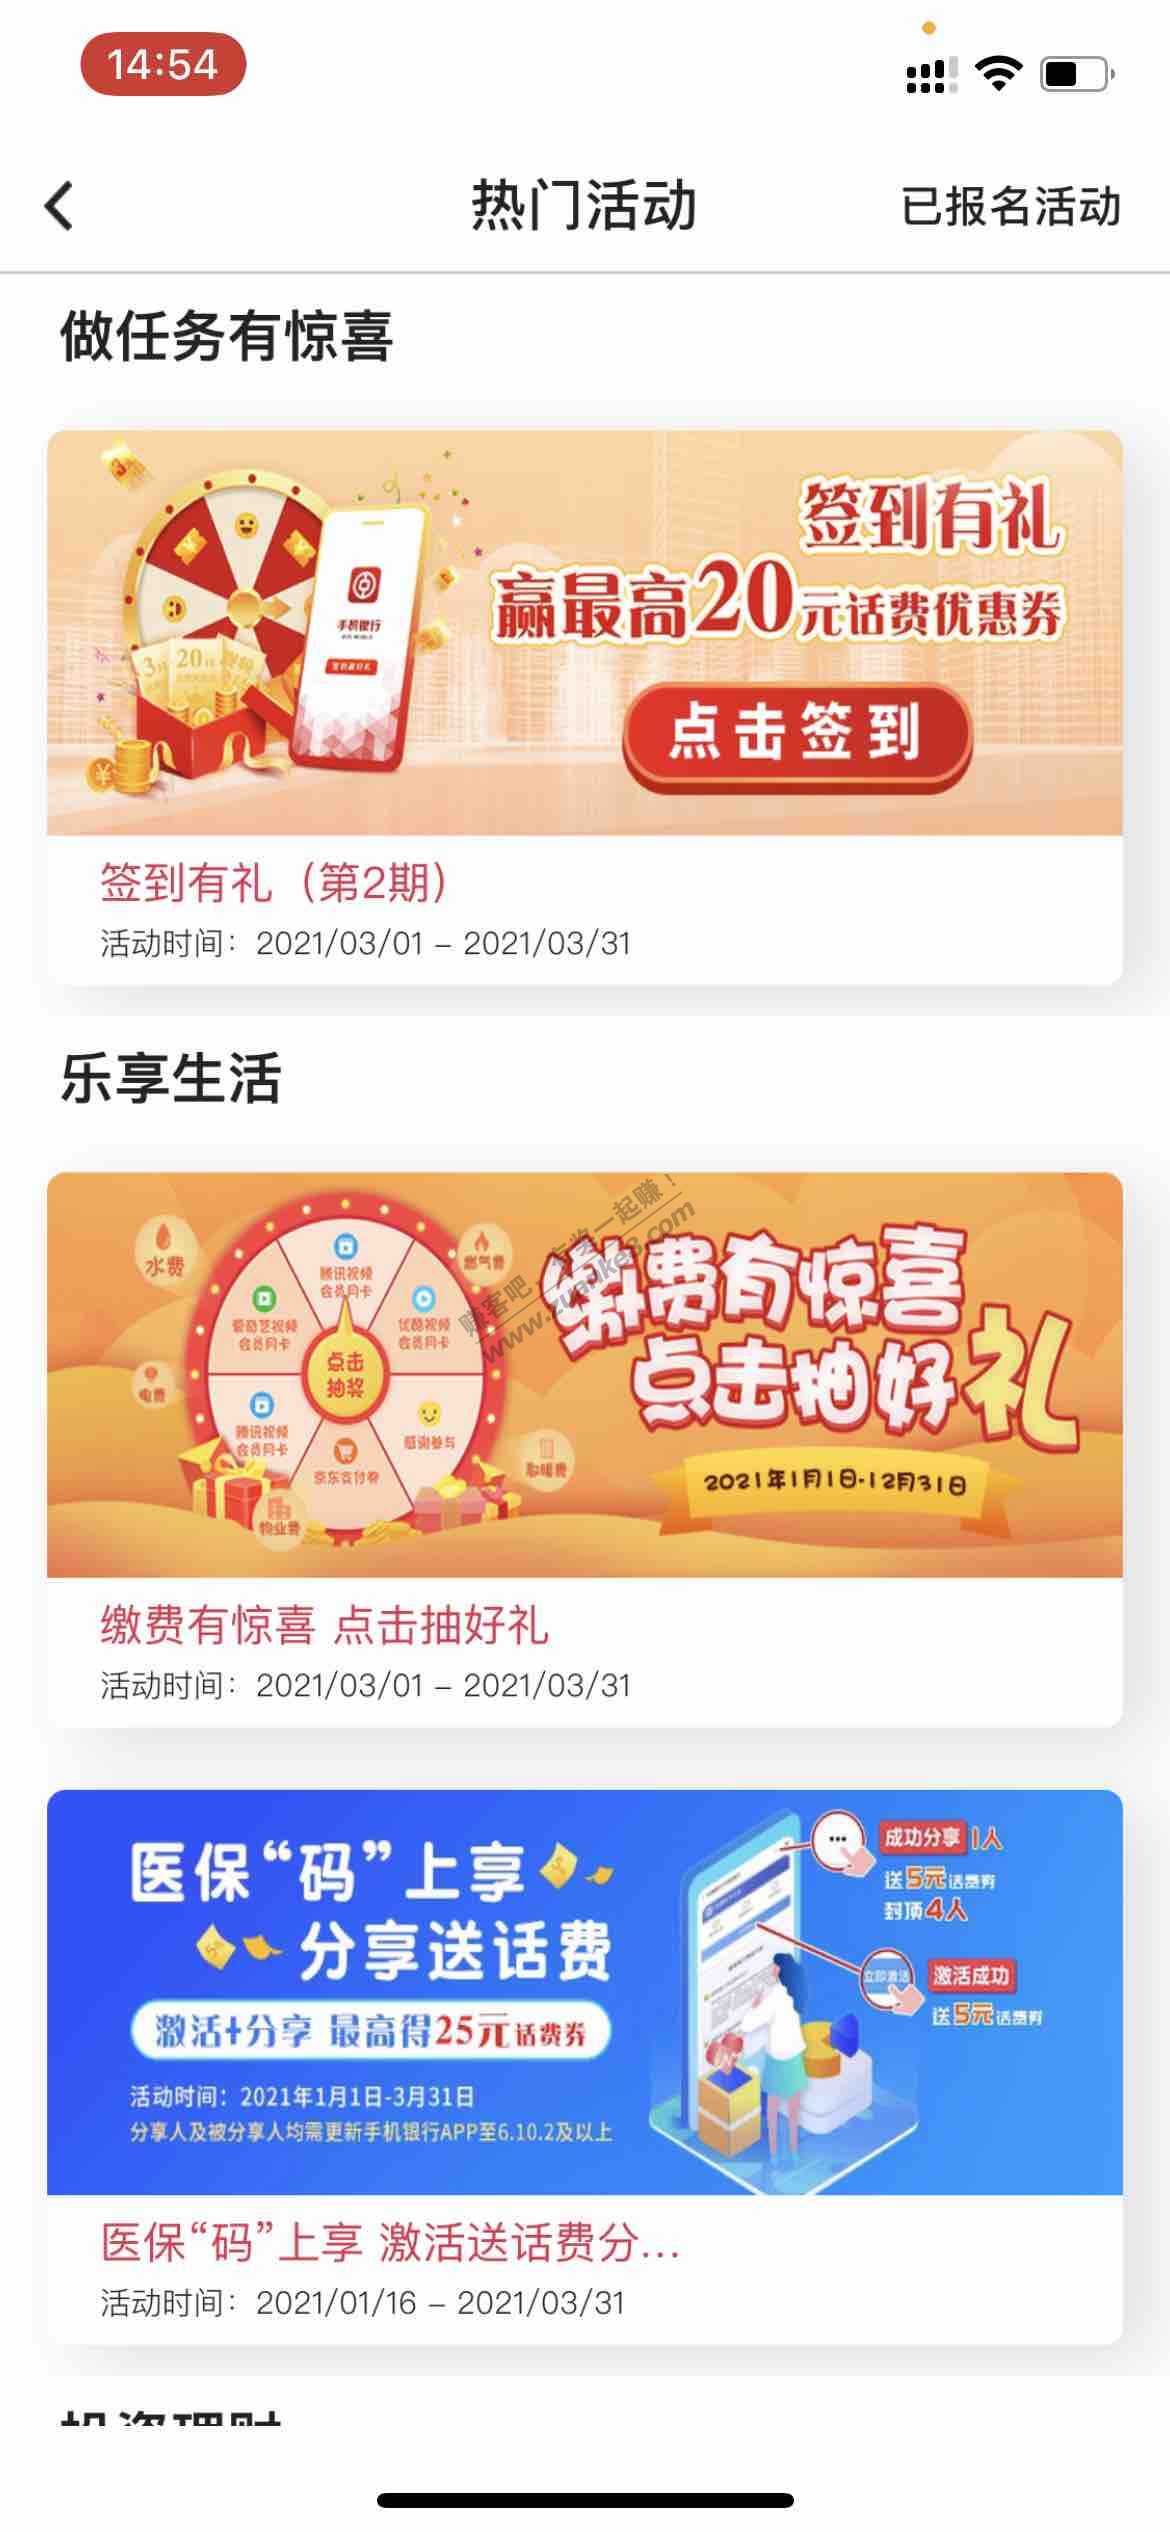 广东中国银行app签到抽最高20元话费卷